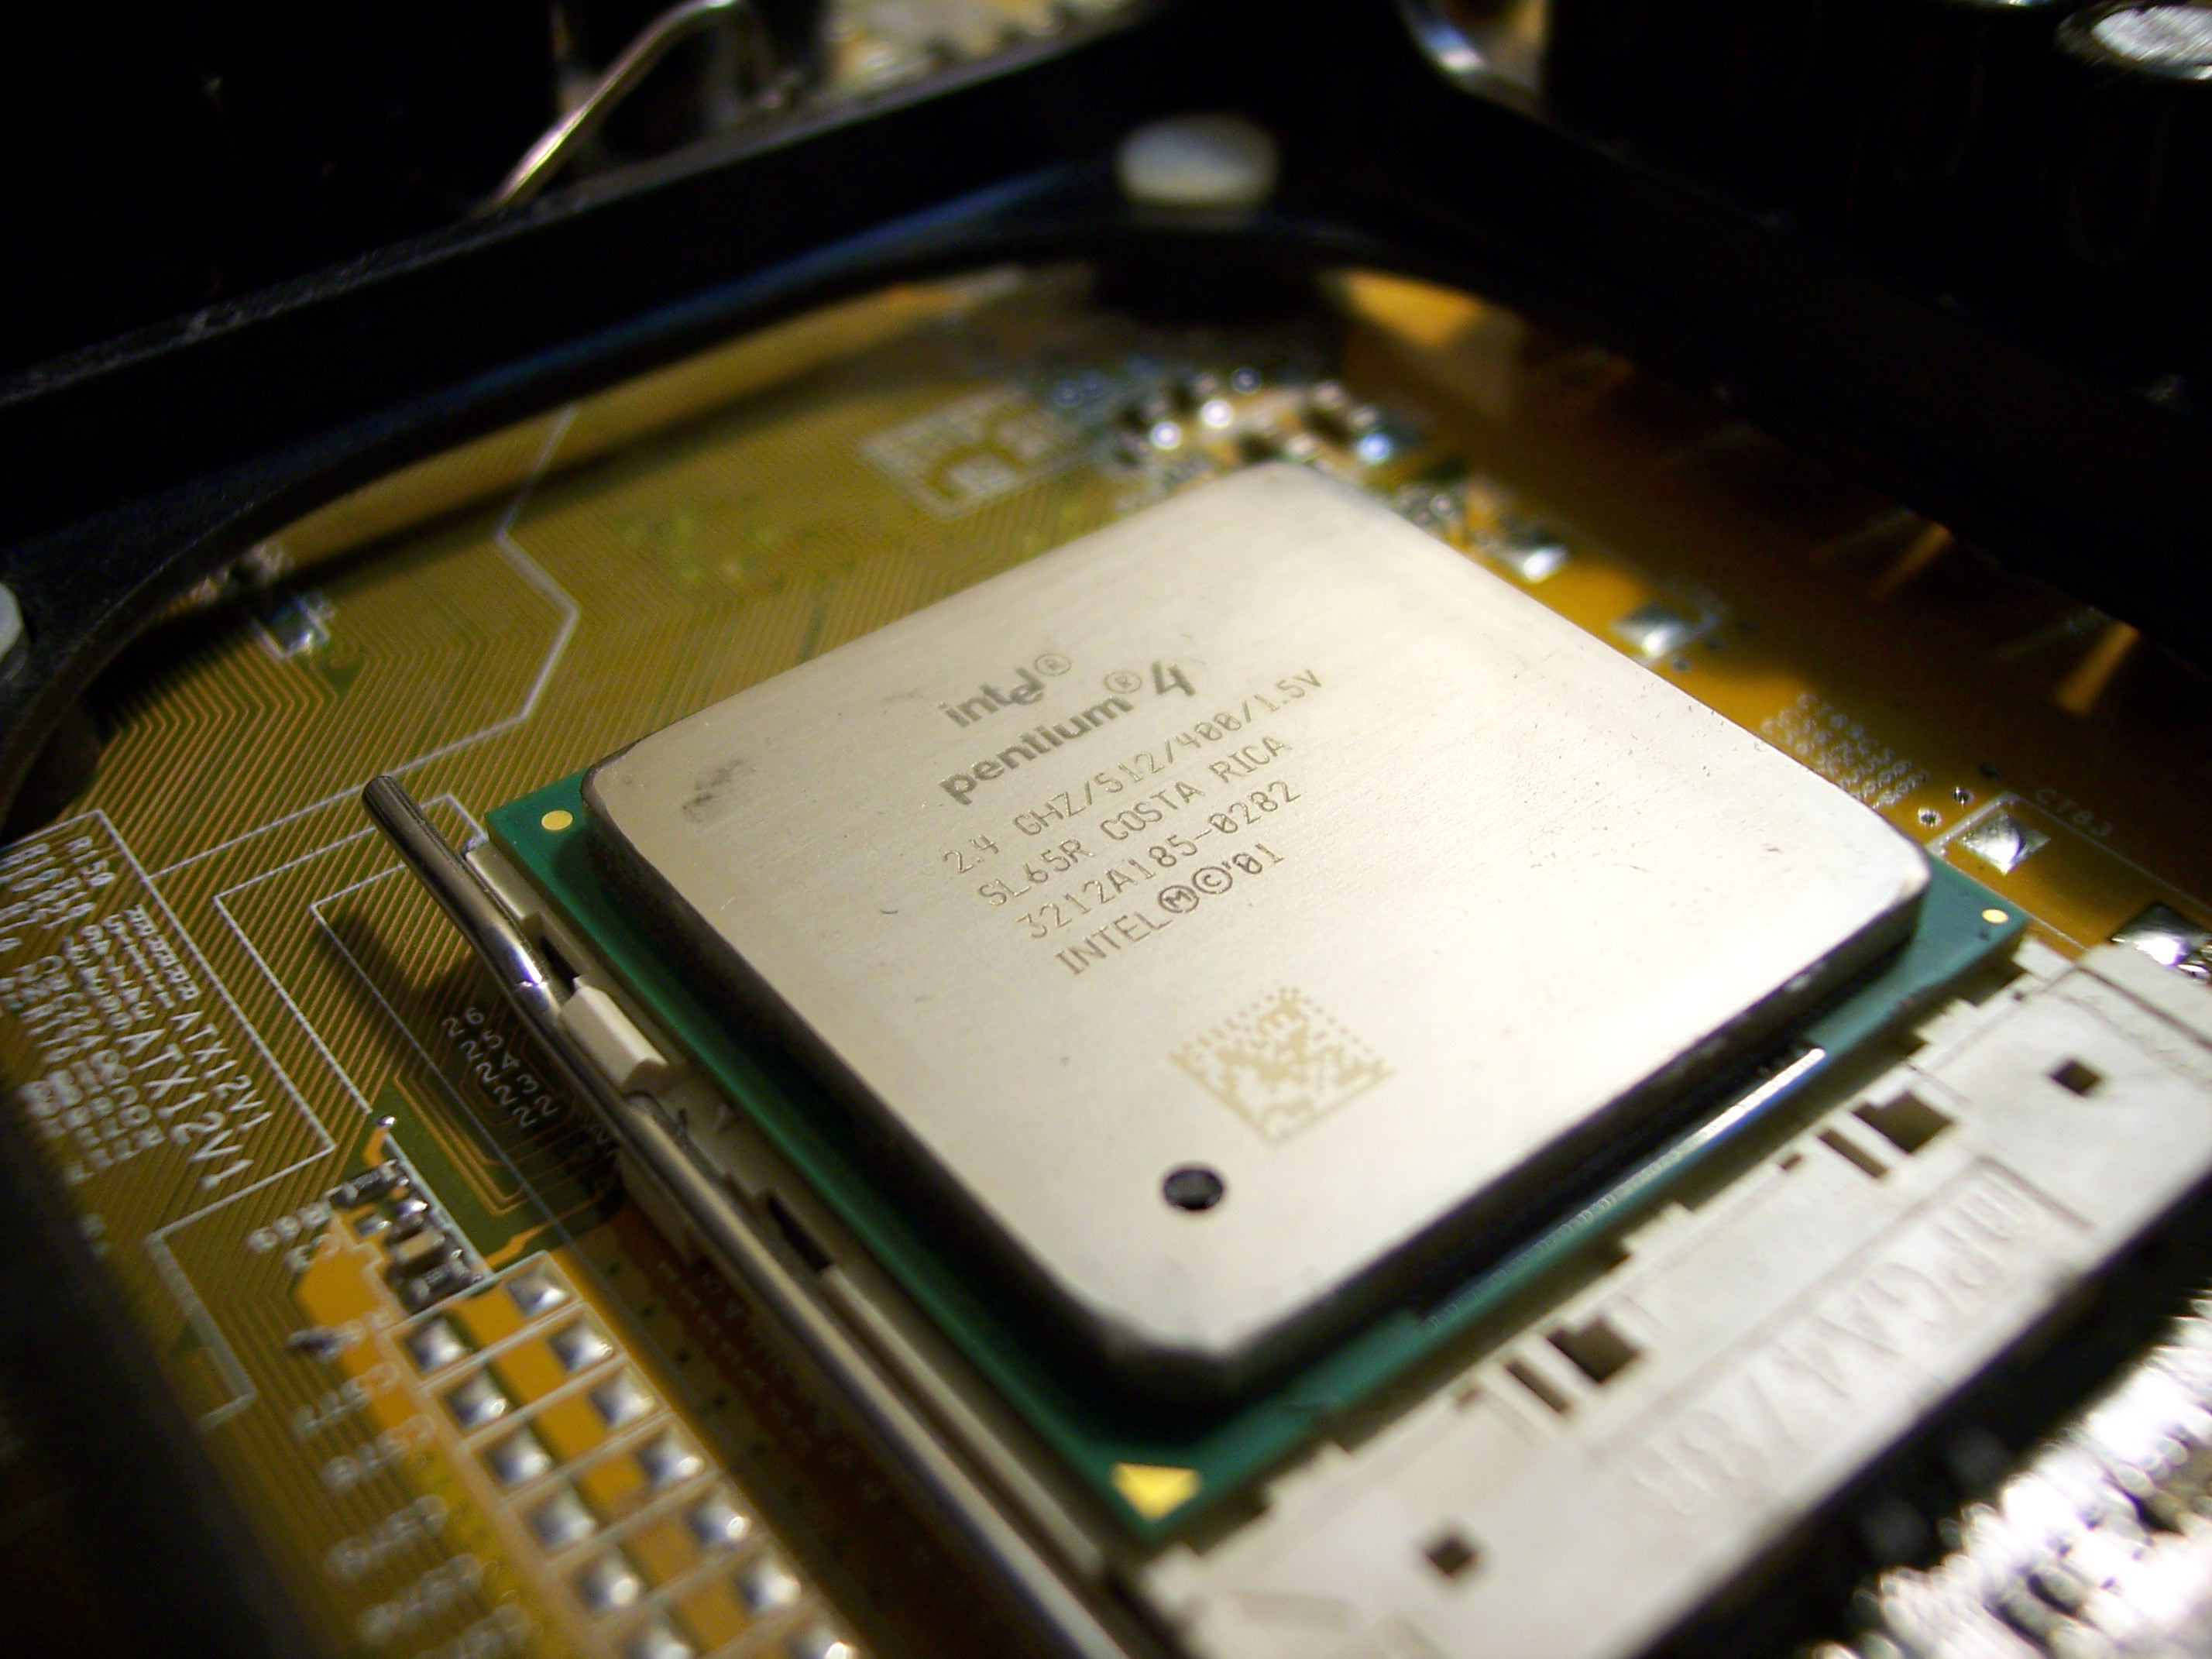 Processor: Pentium 4 or equivalent
RAM: 2GB or higher